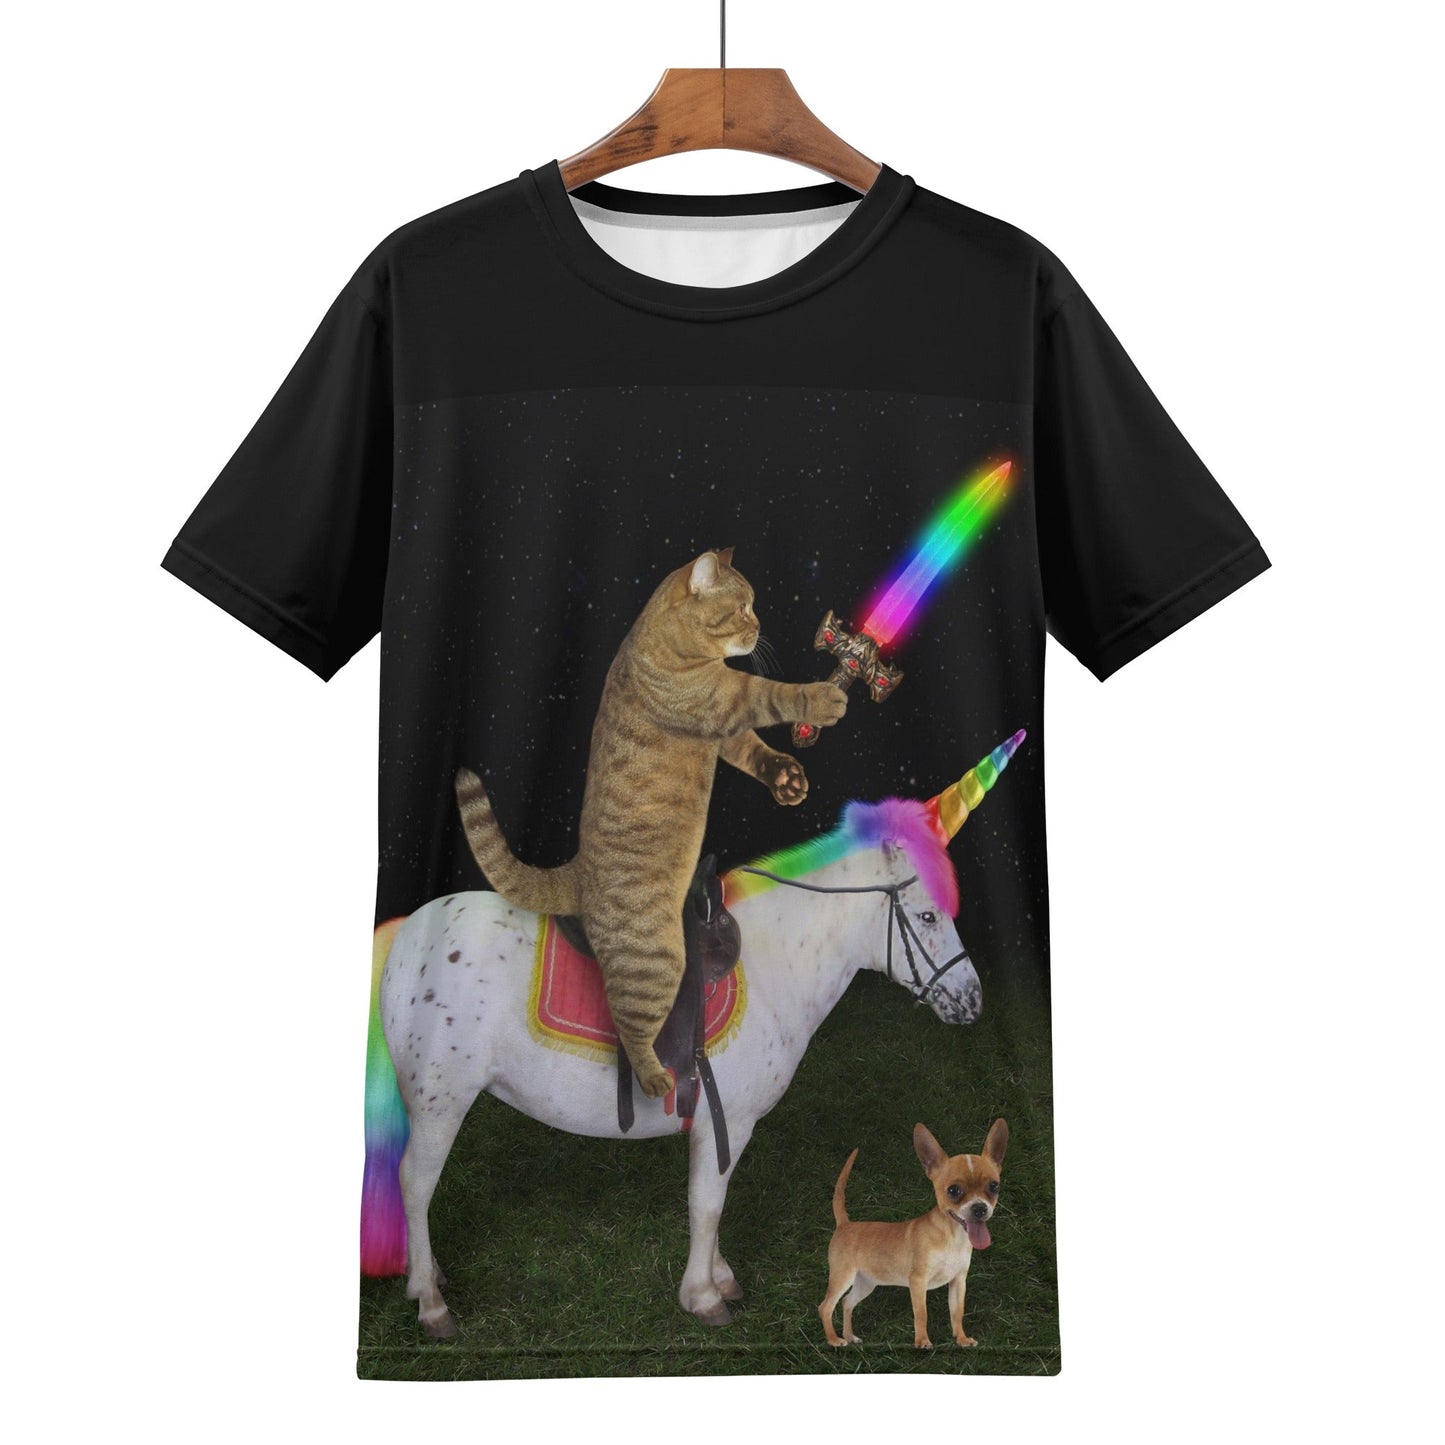 T4x Men's Kitty Knight T-shirt - T4x Quadruple Love